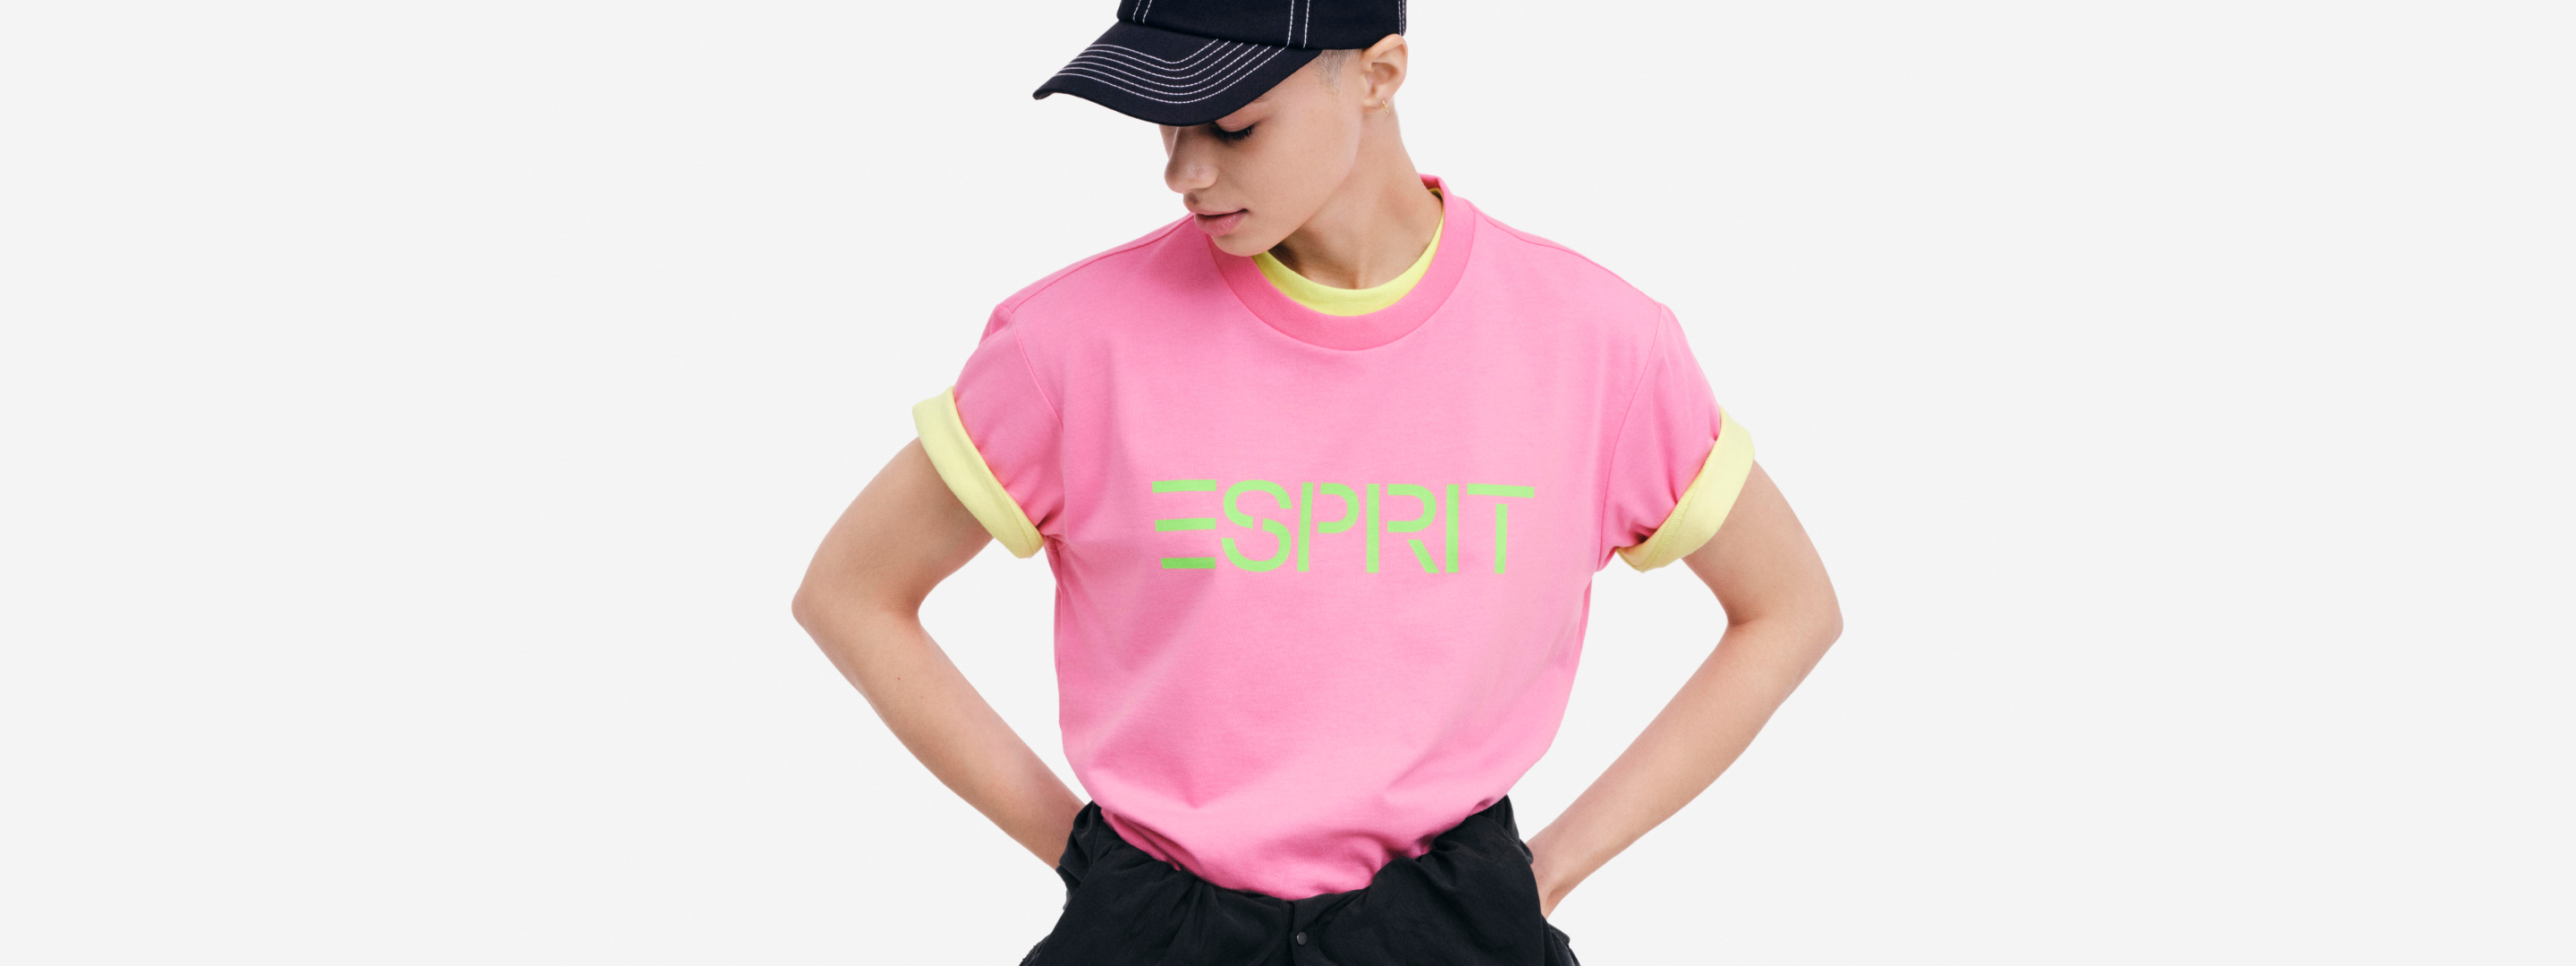 T-SHIRT SPORT MANCHES LONGUES FEMME - T-shirts et sweats de sport -  Vêtements de sport